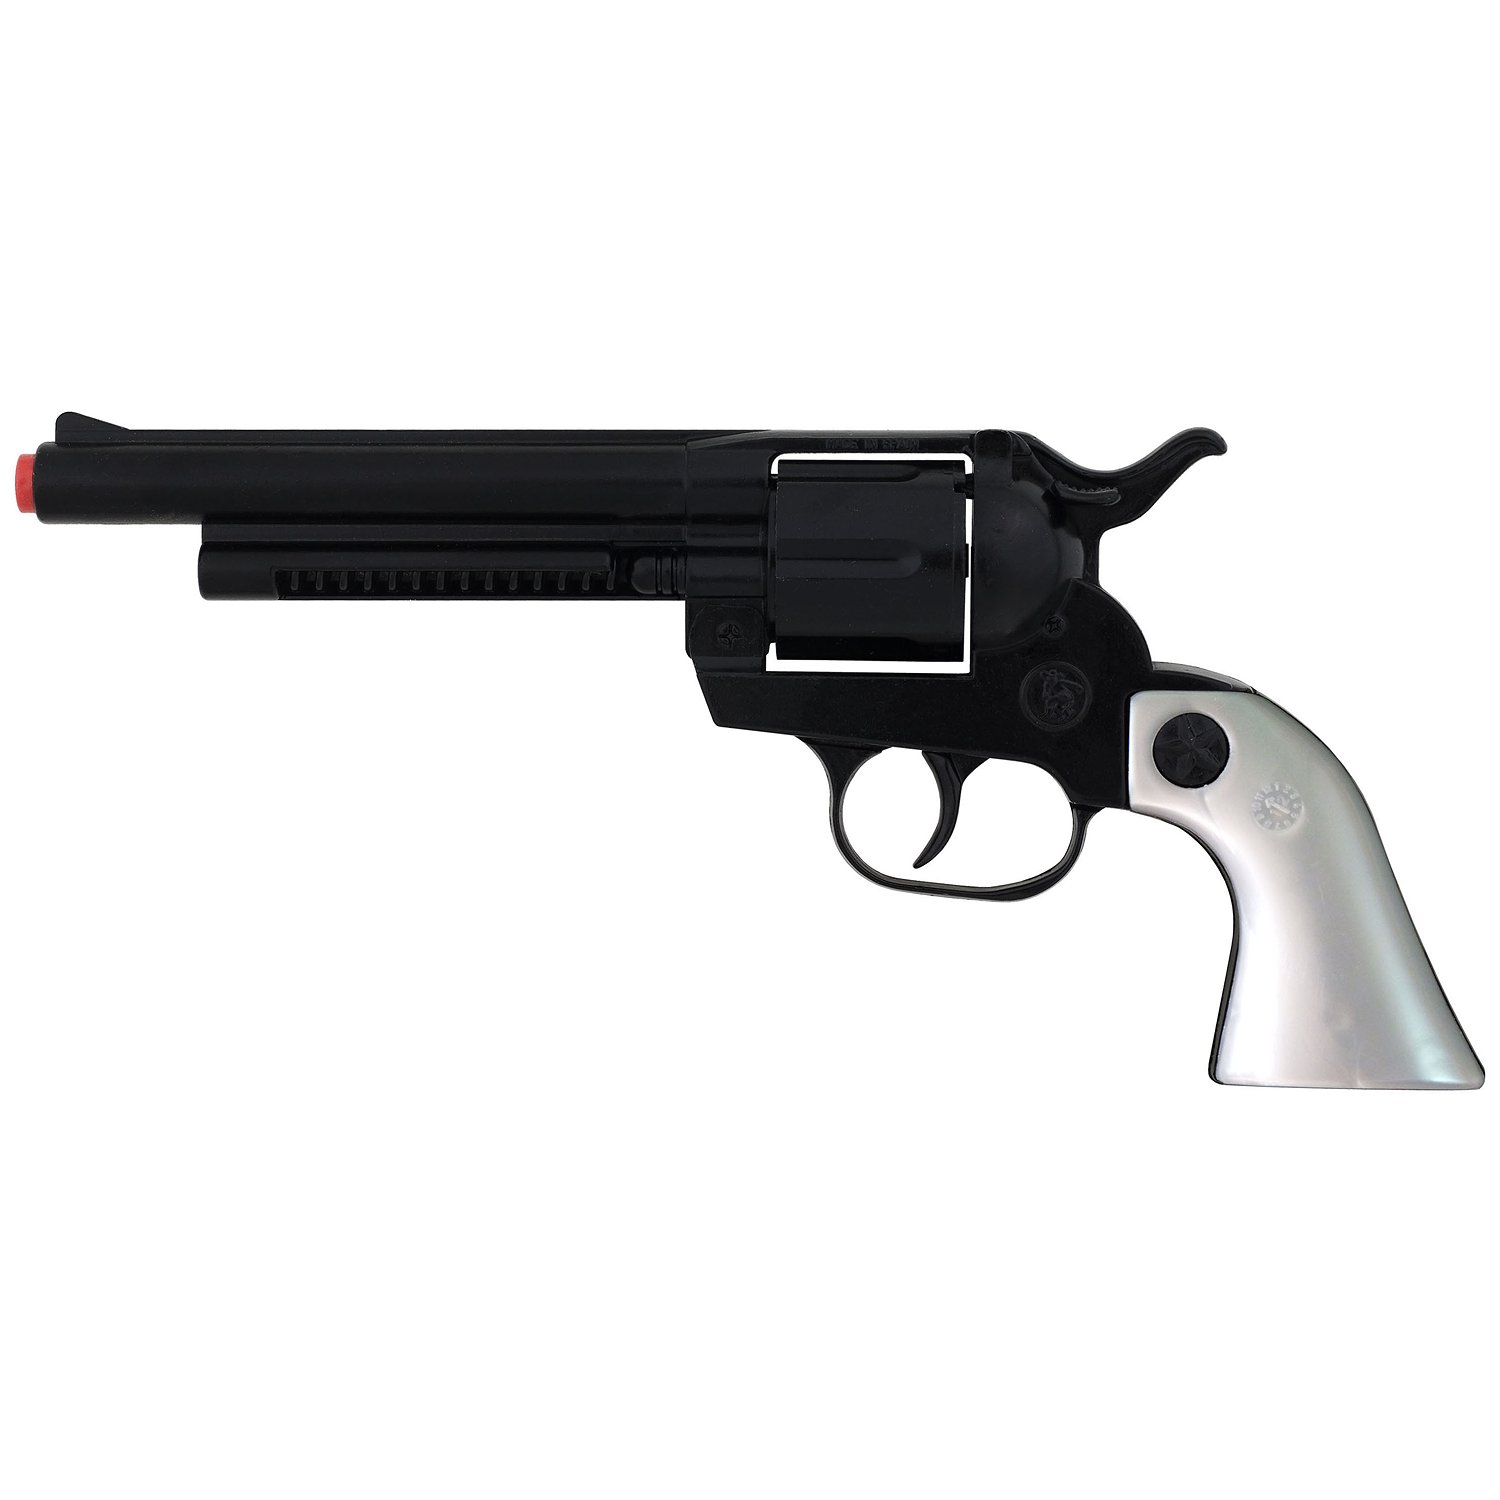 Gonher Ковбойский Револьвер игрушечный на 12 пистонов, цвет – черный